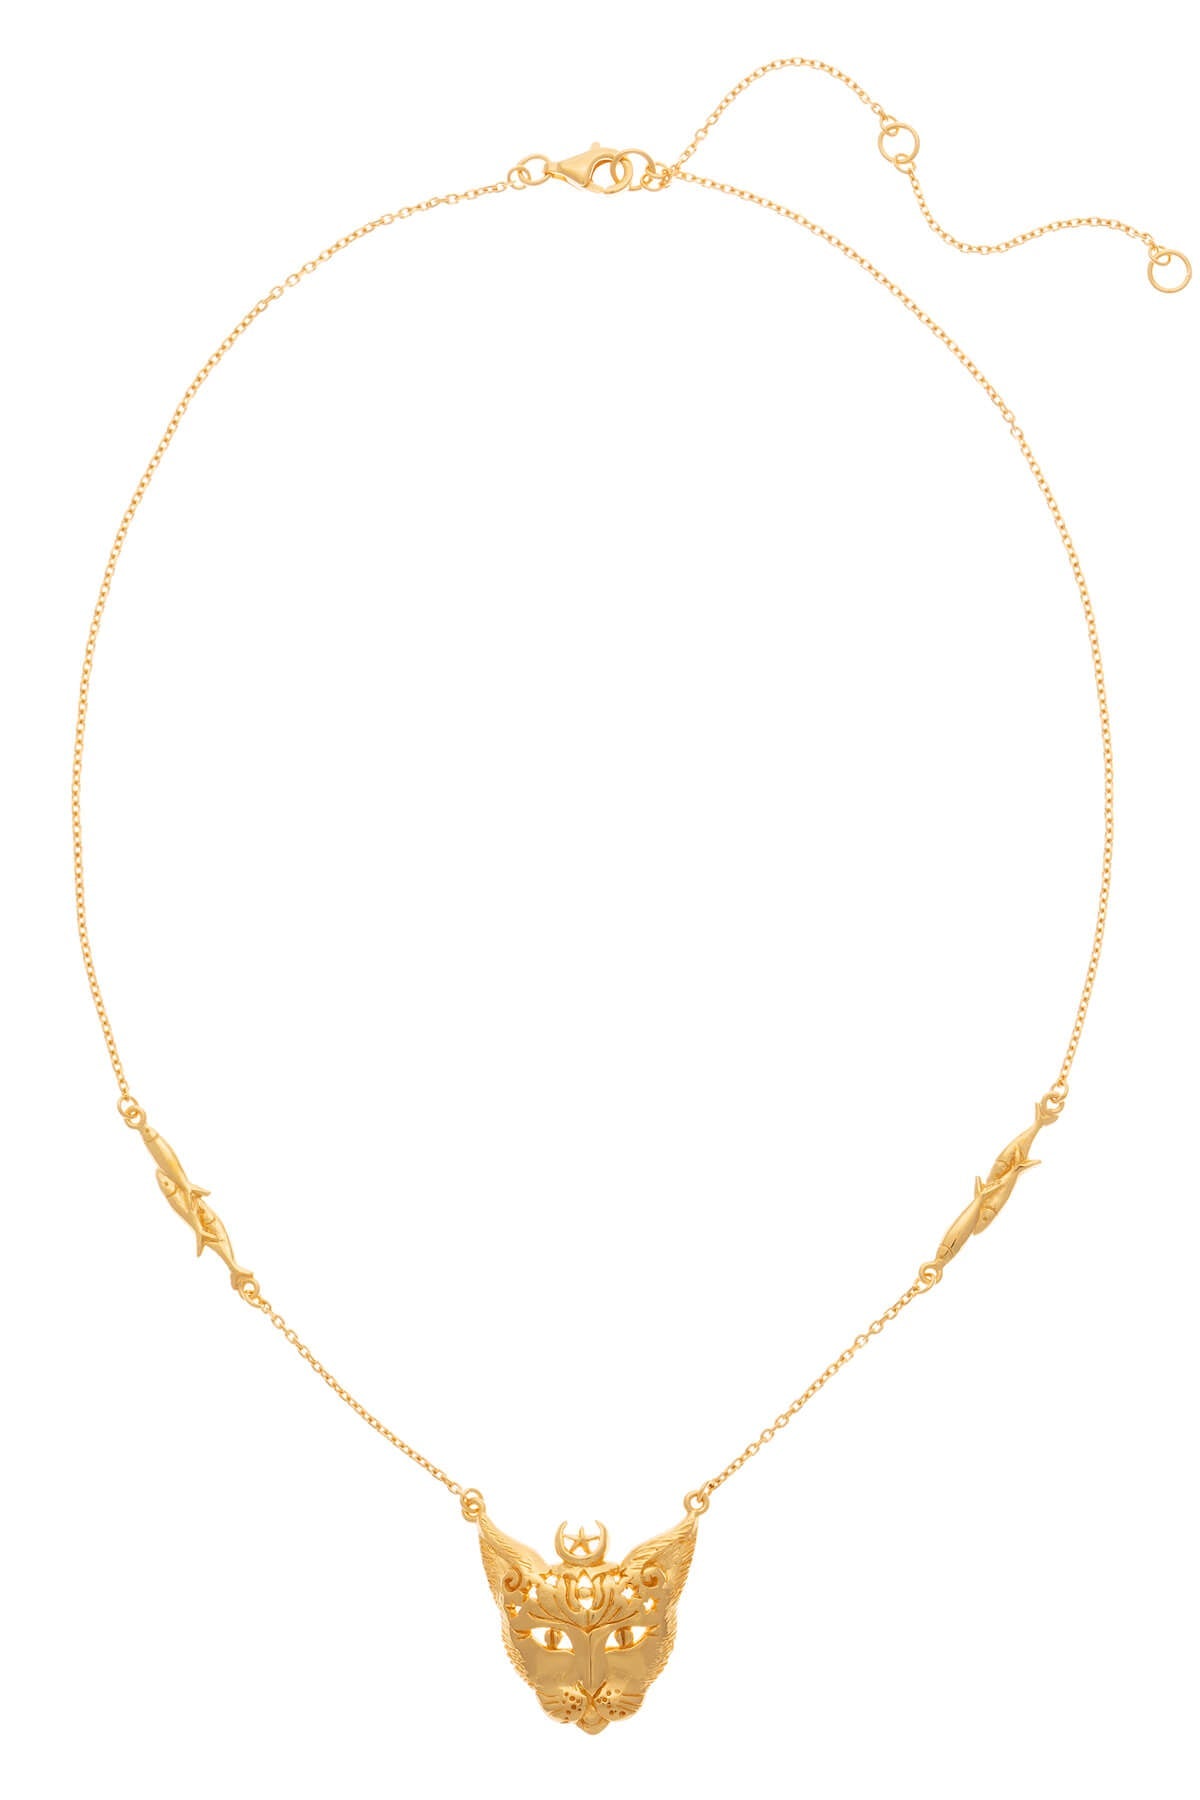 Solid gold Bastet Goddess necklace